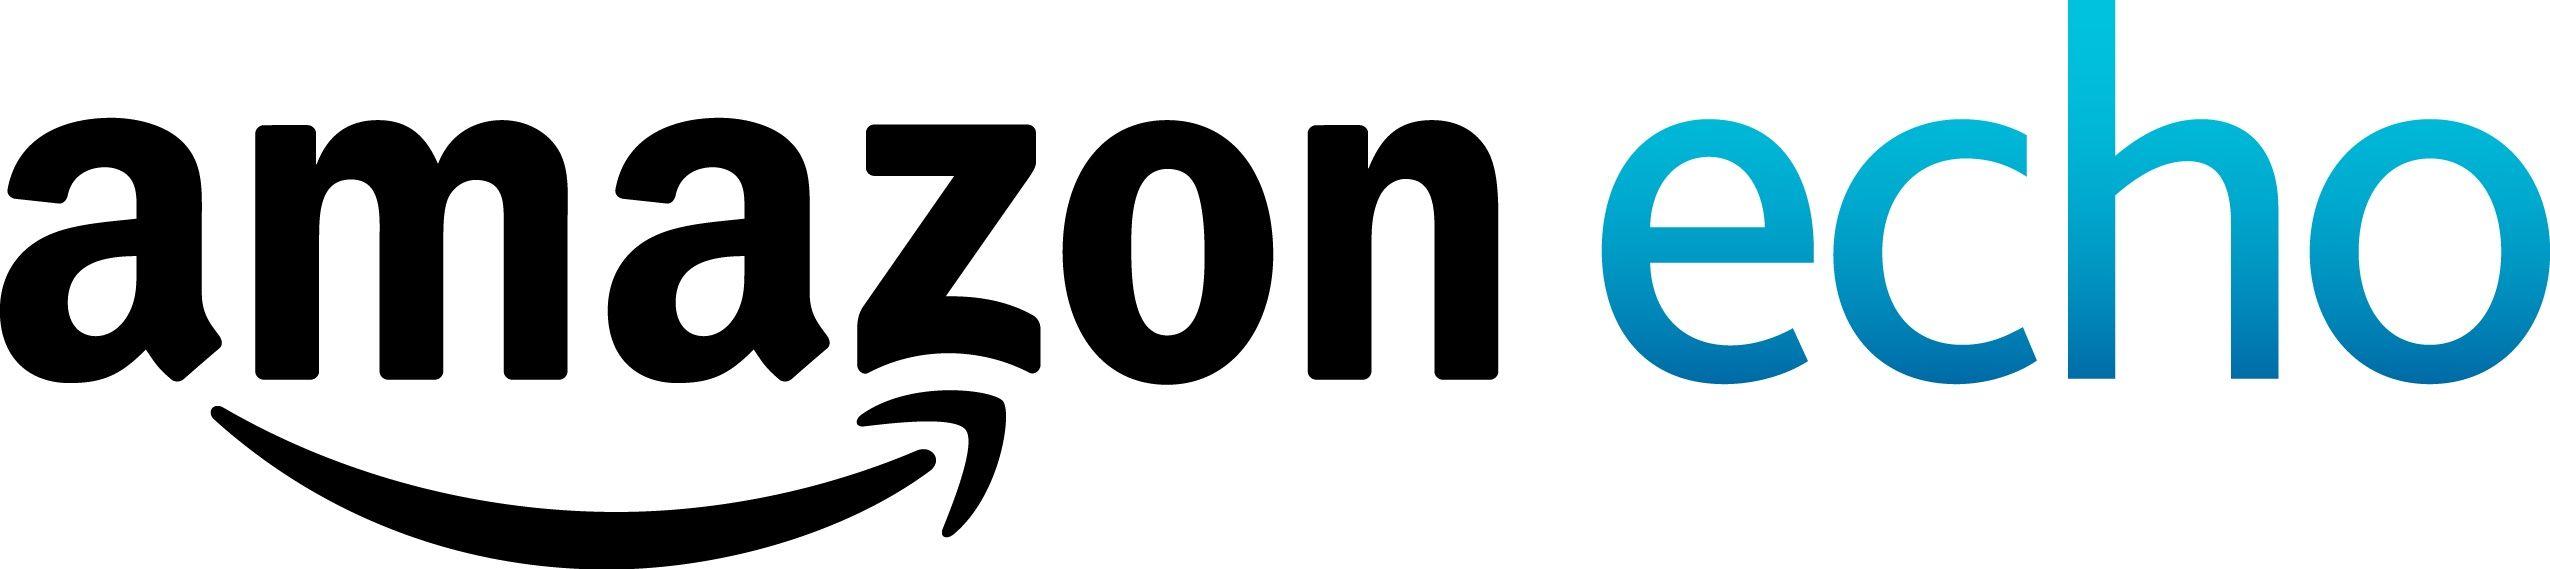 New Amazon Logo - Images - Logos